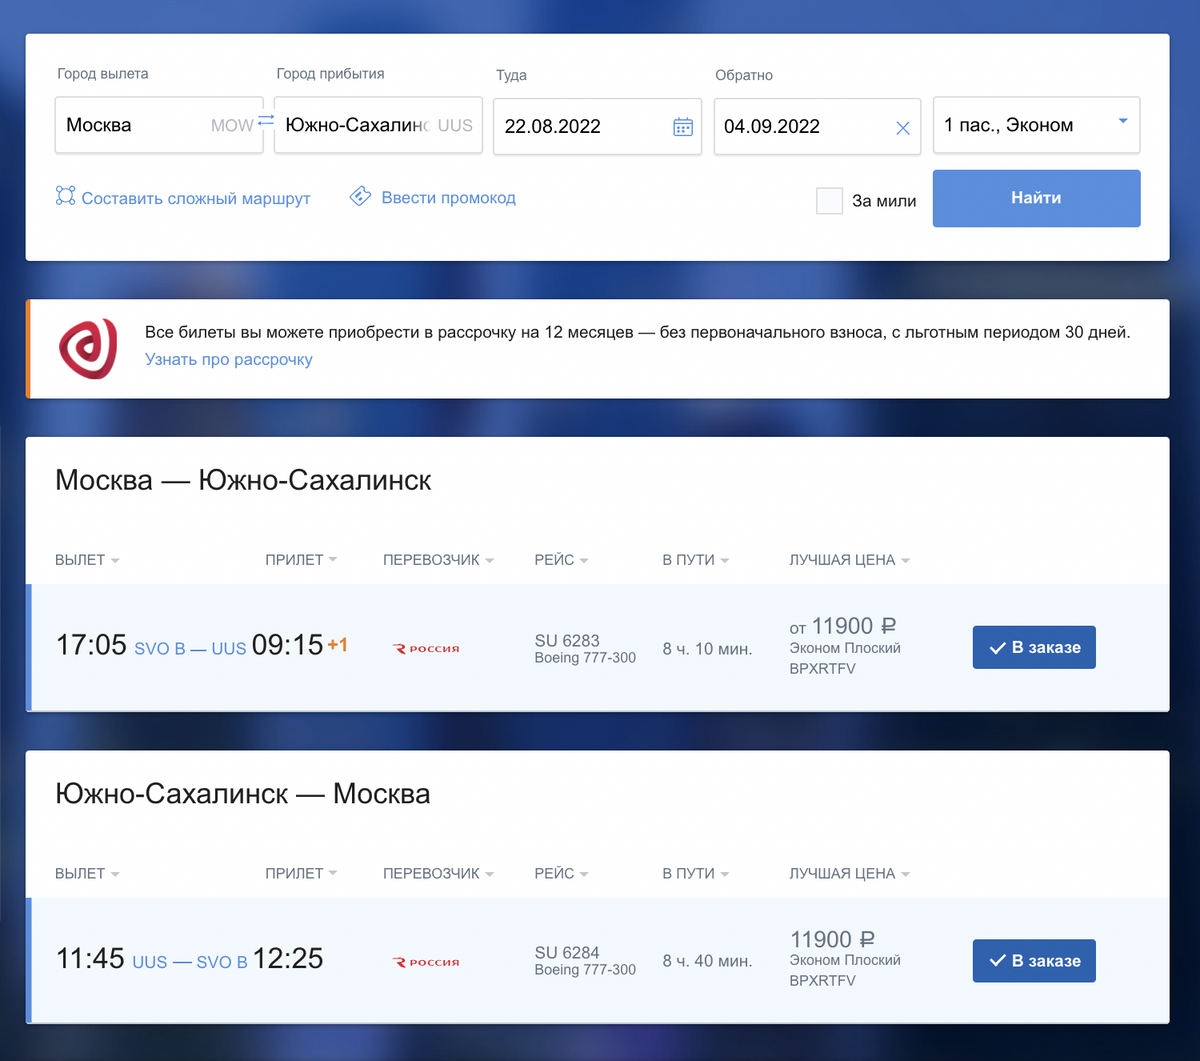 В стоимость билетов включена ручная кладь до 10 килограммов и багаж до 23 килограммов. Источник:&nbsp;aeroflot.ru